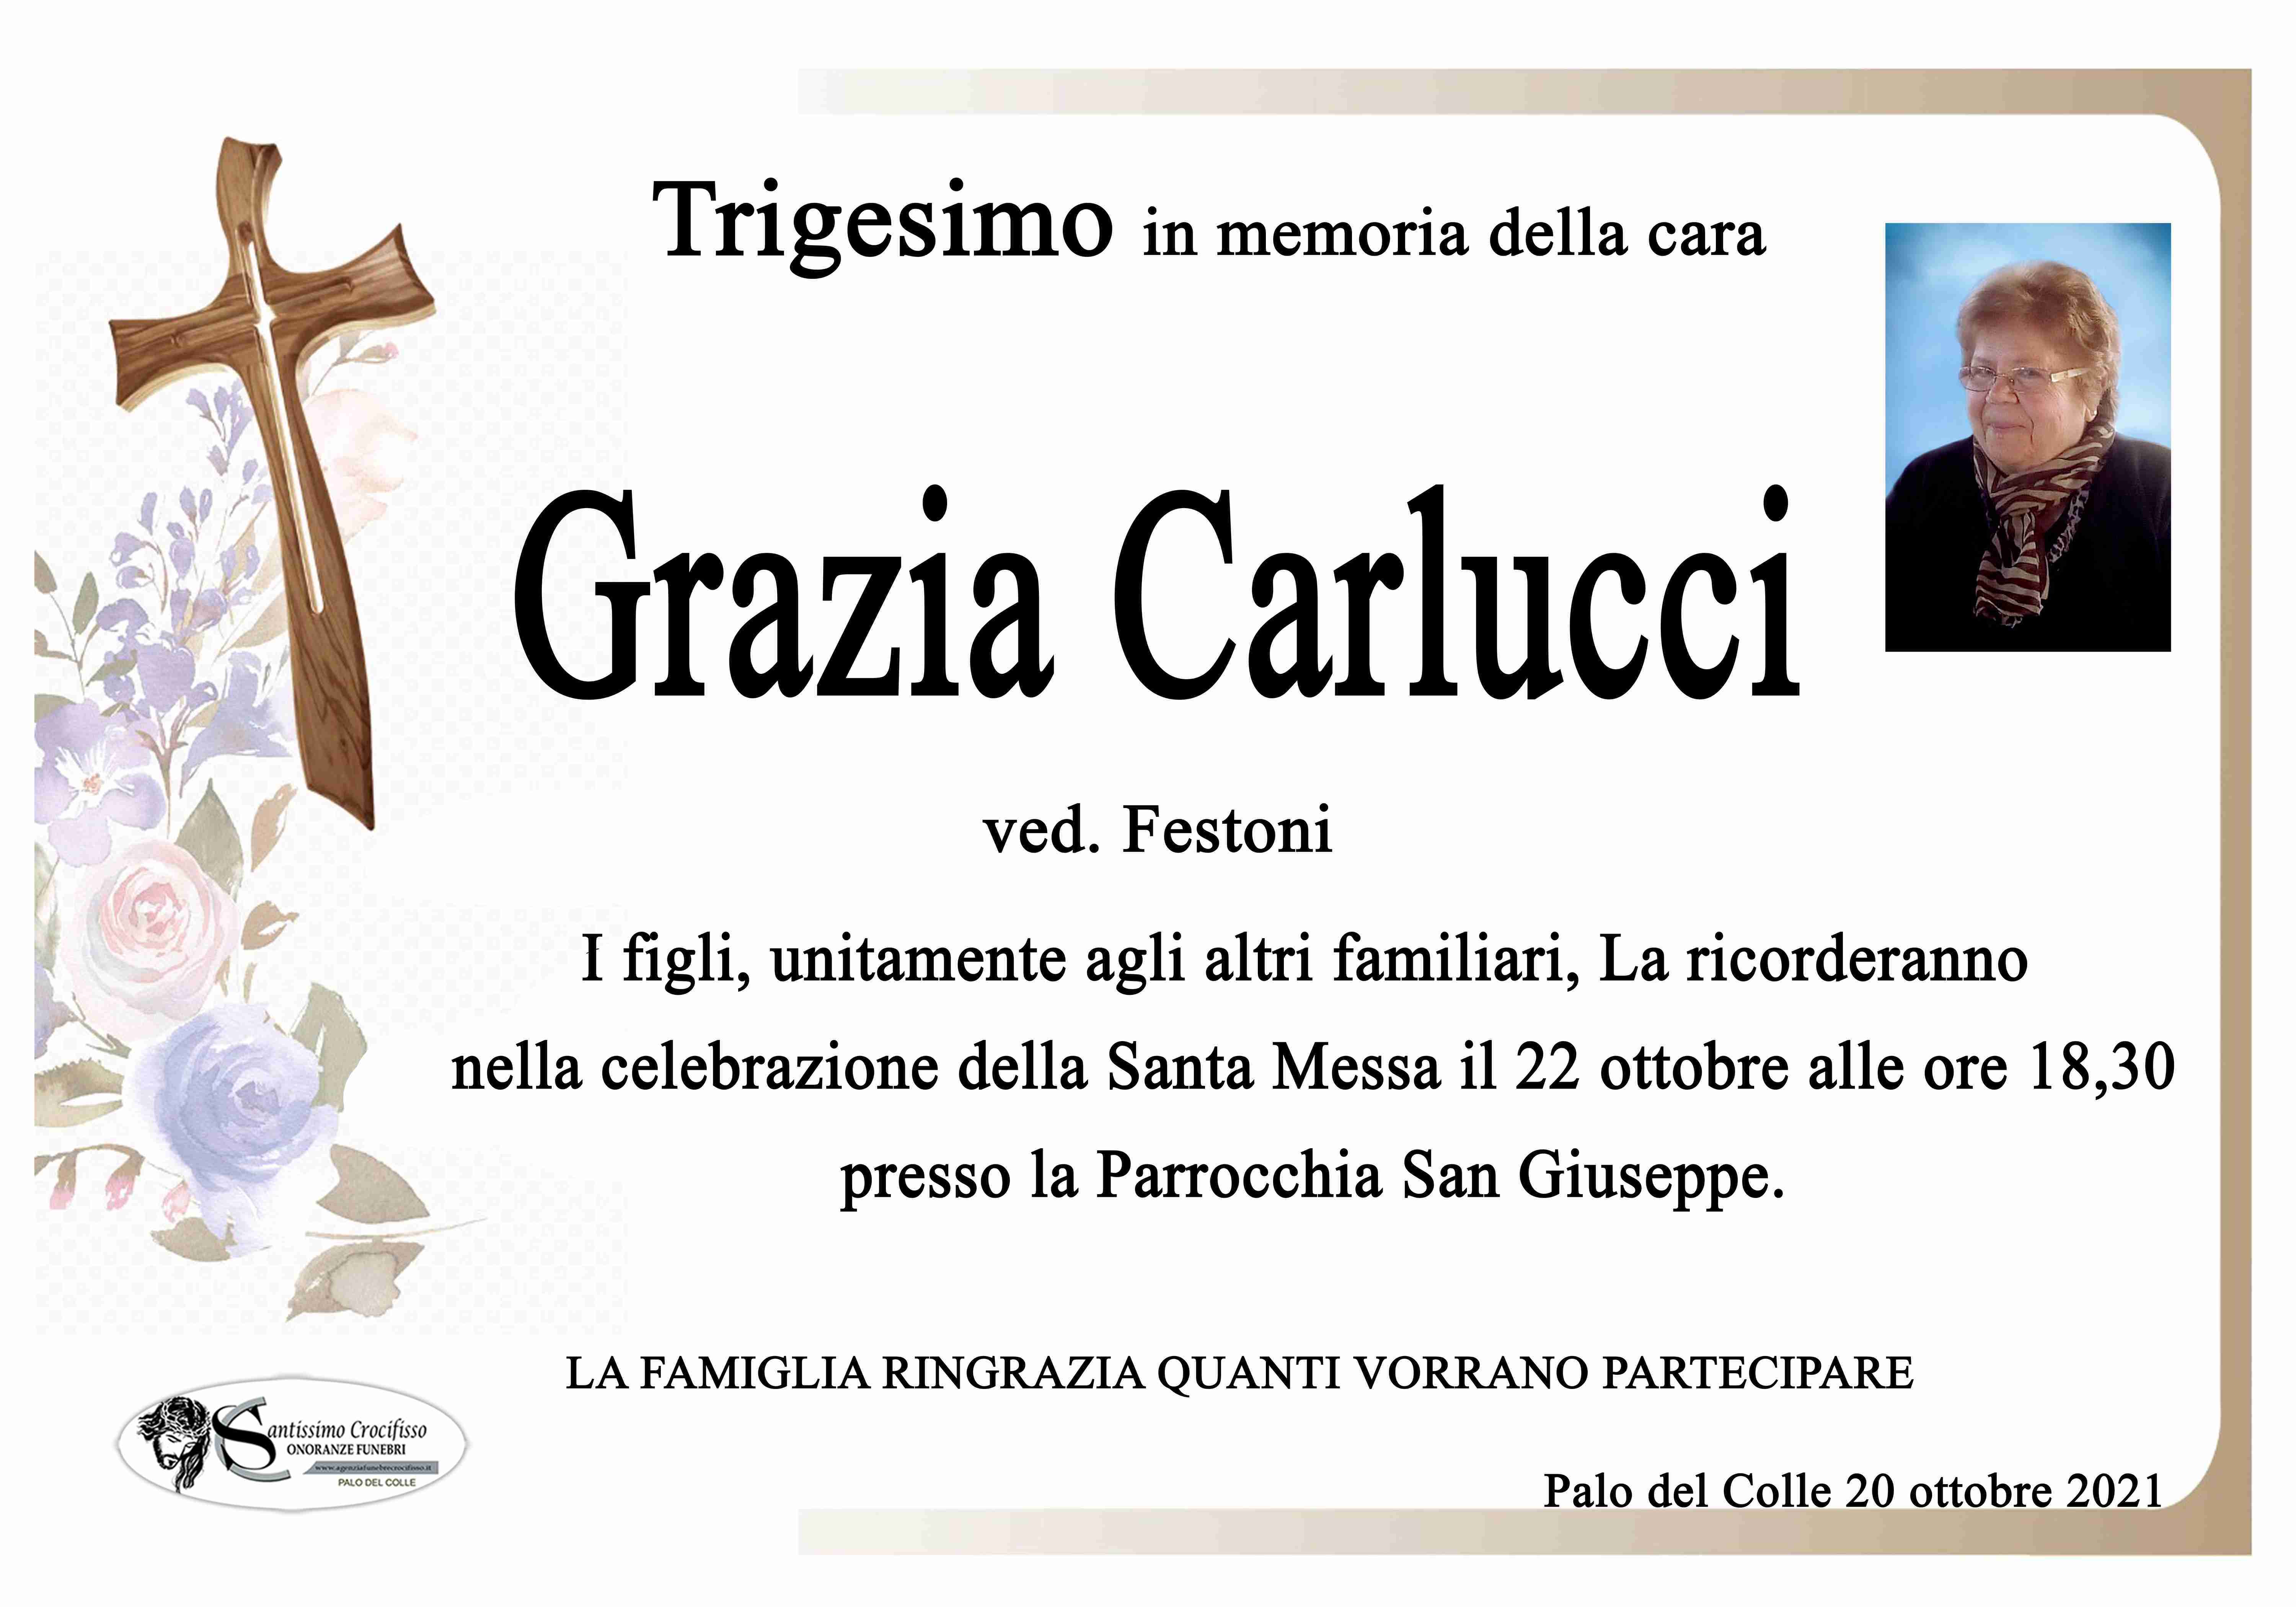 Grazia Carlucci